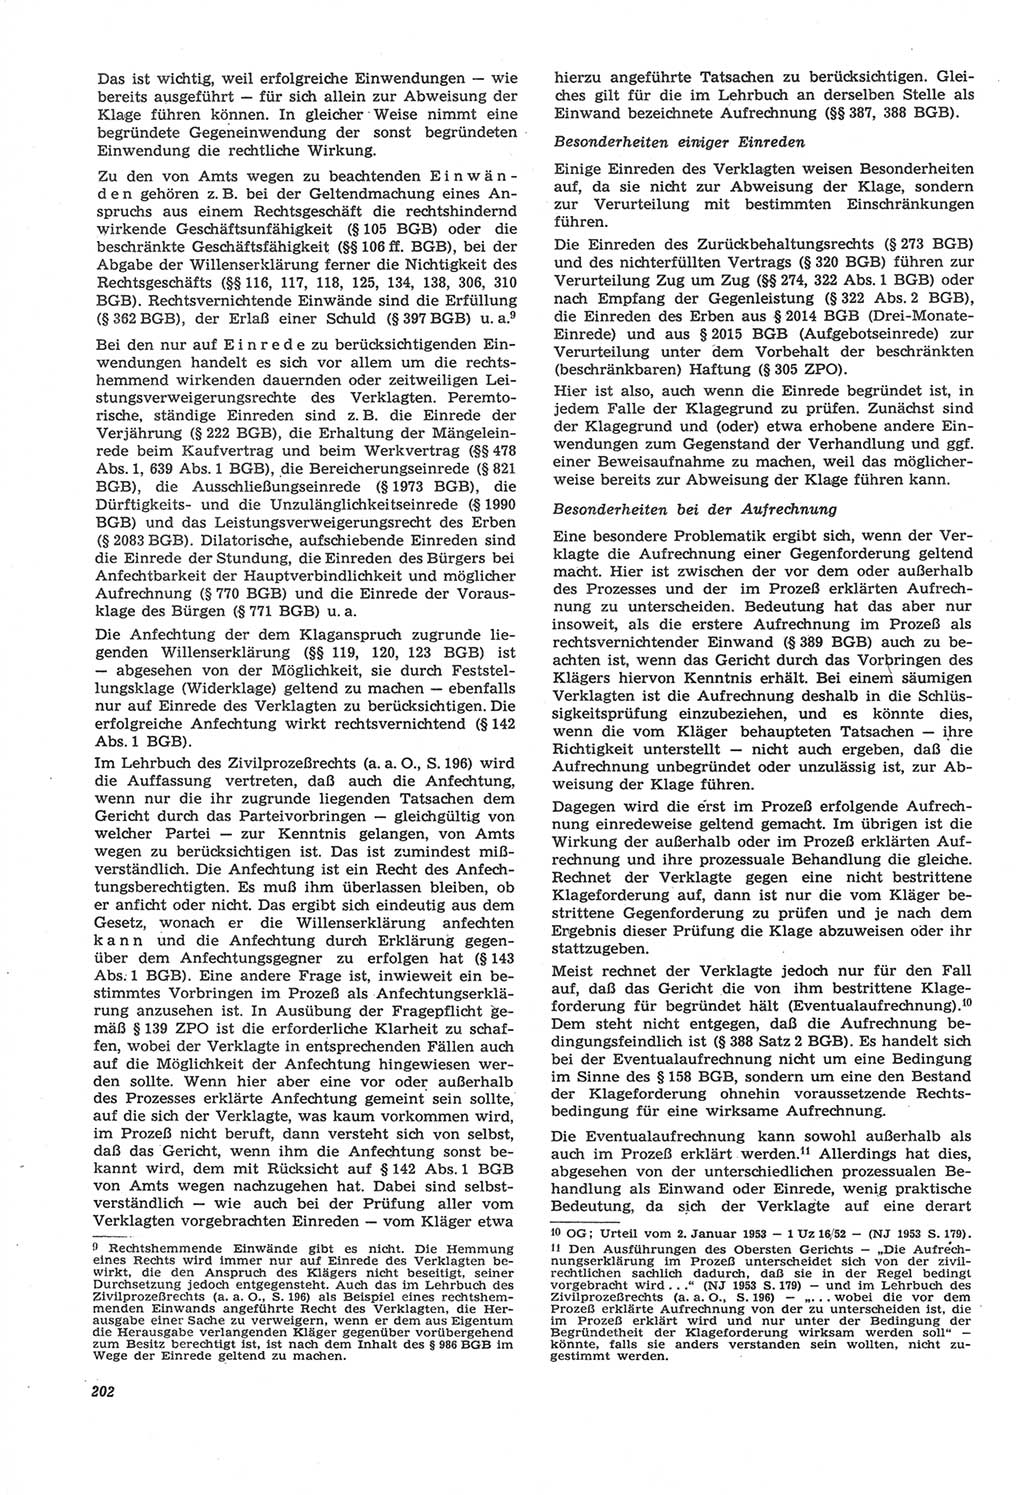 Neue Justiz (NJ), Zeitschrift für Recht und Rechtswissenschaft [Deutsche Demokratische Republik (DDR)], 22. Jahrgang 1968, Seite 202 (NJ DDR 1968, S. 202)